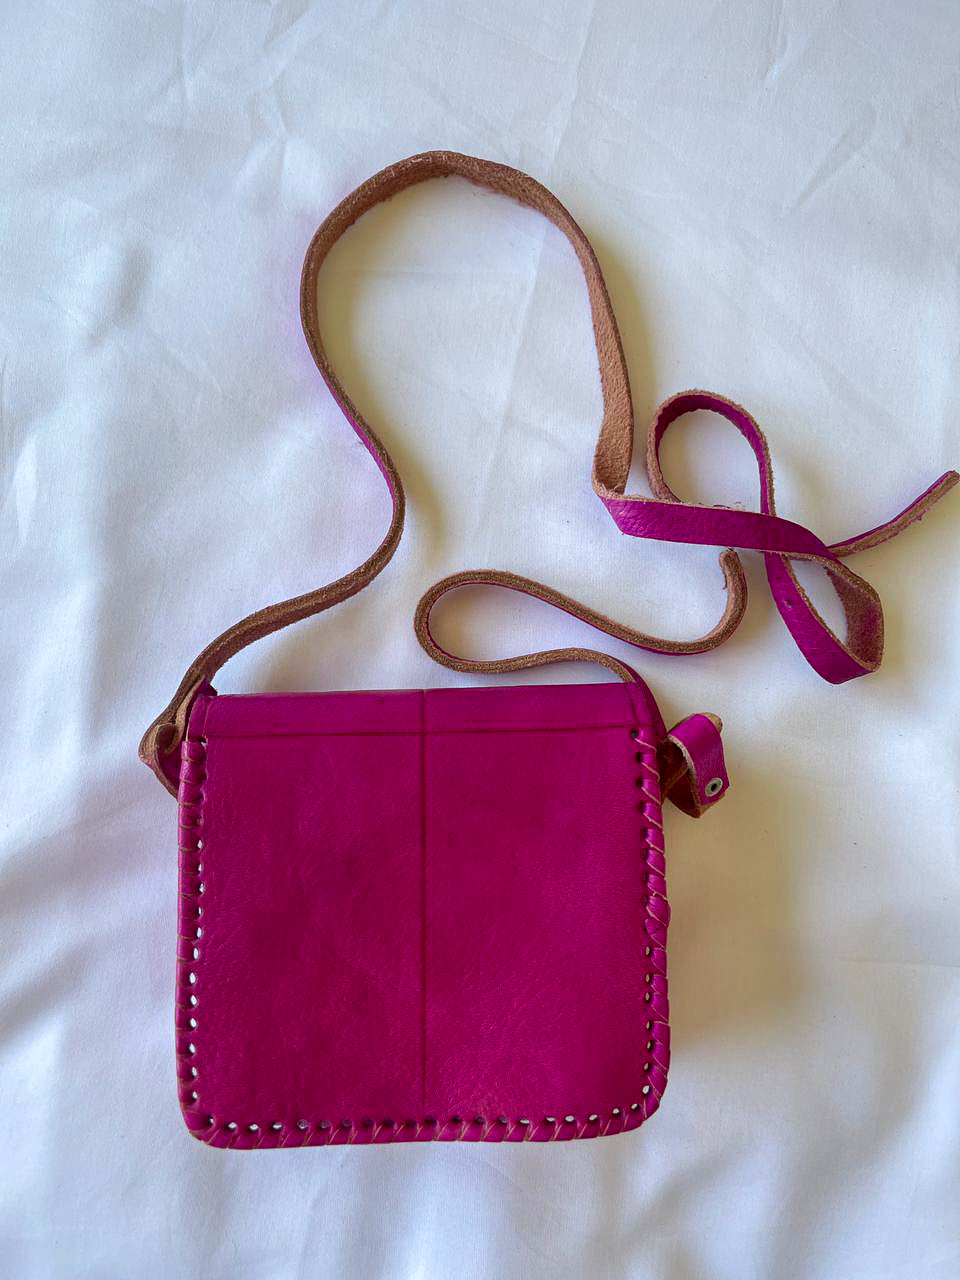 back of the pink leather shoulder bag